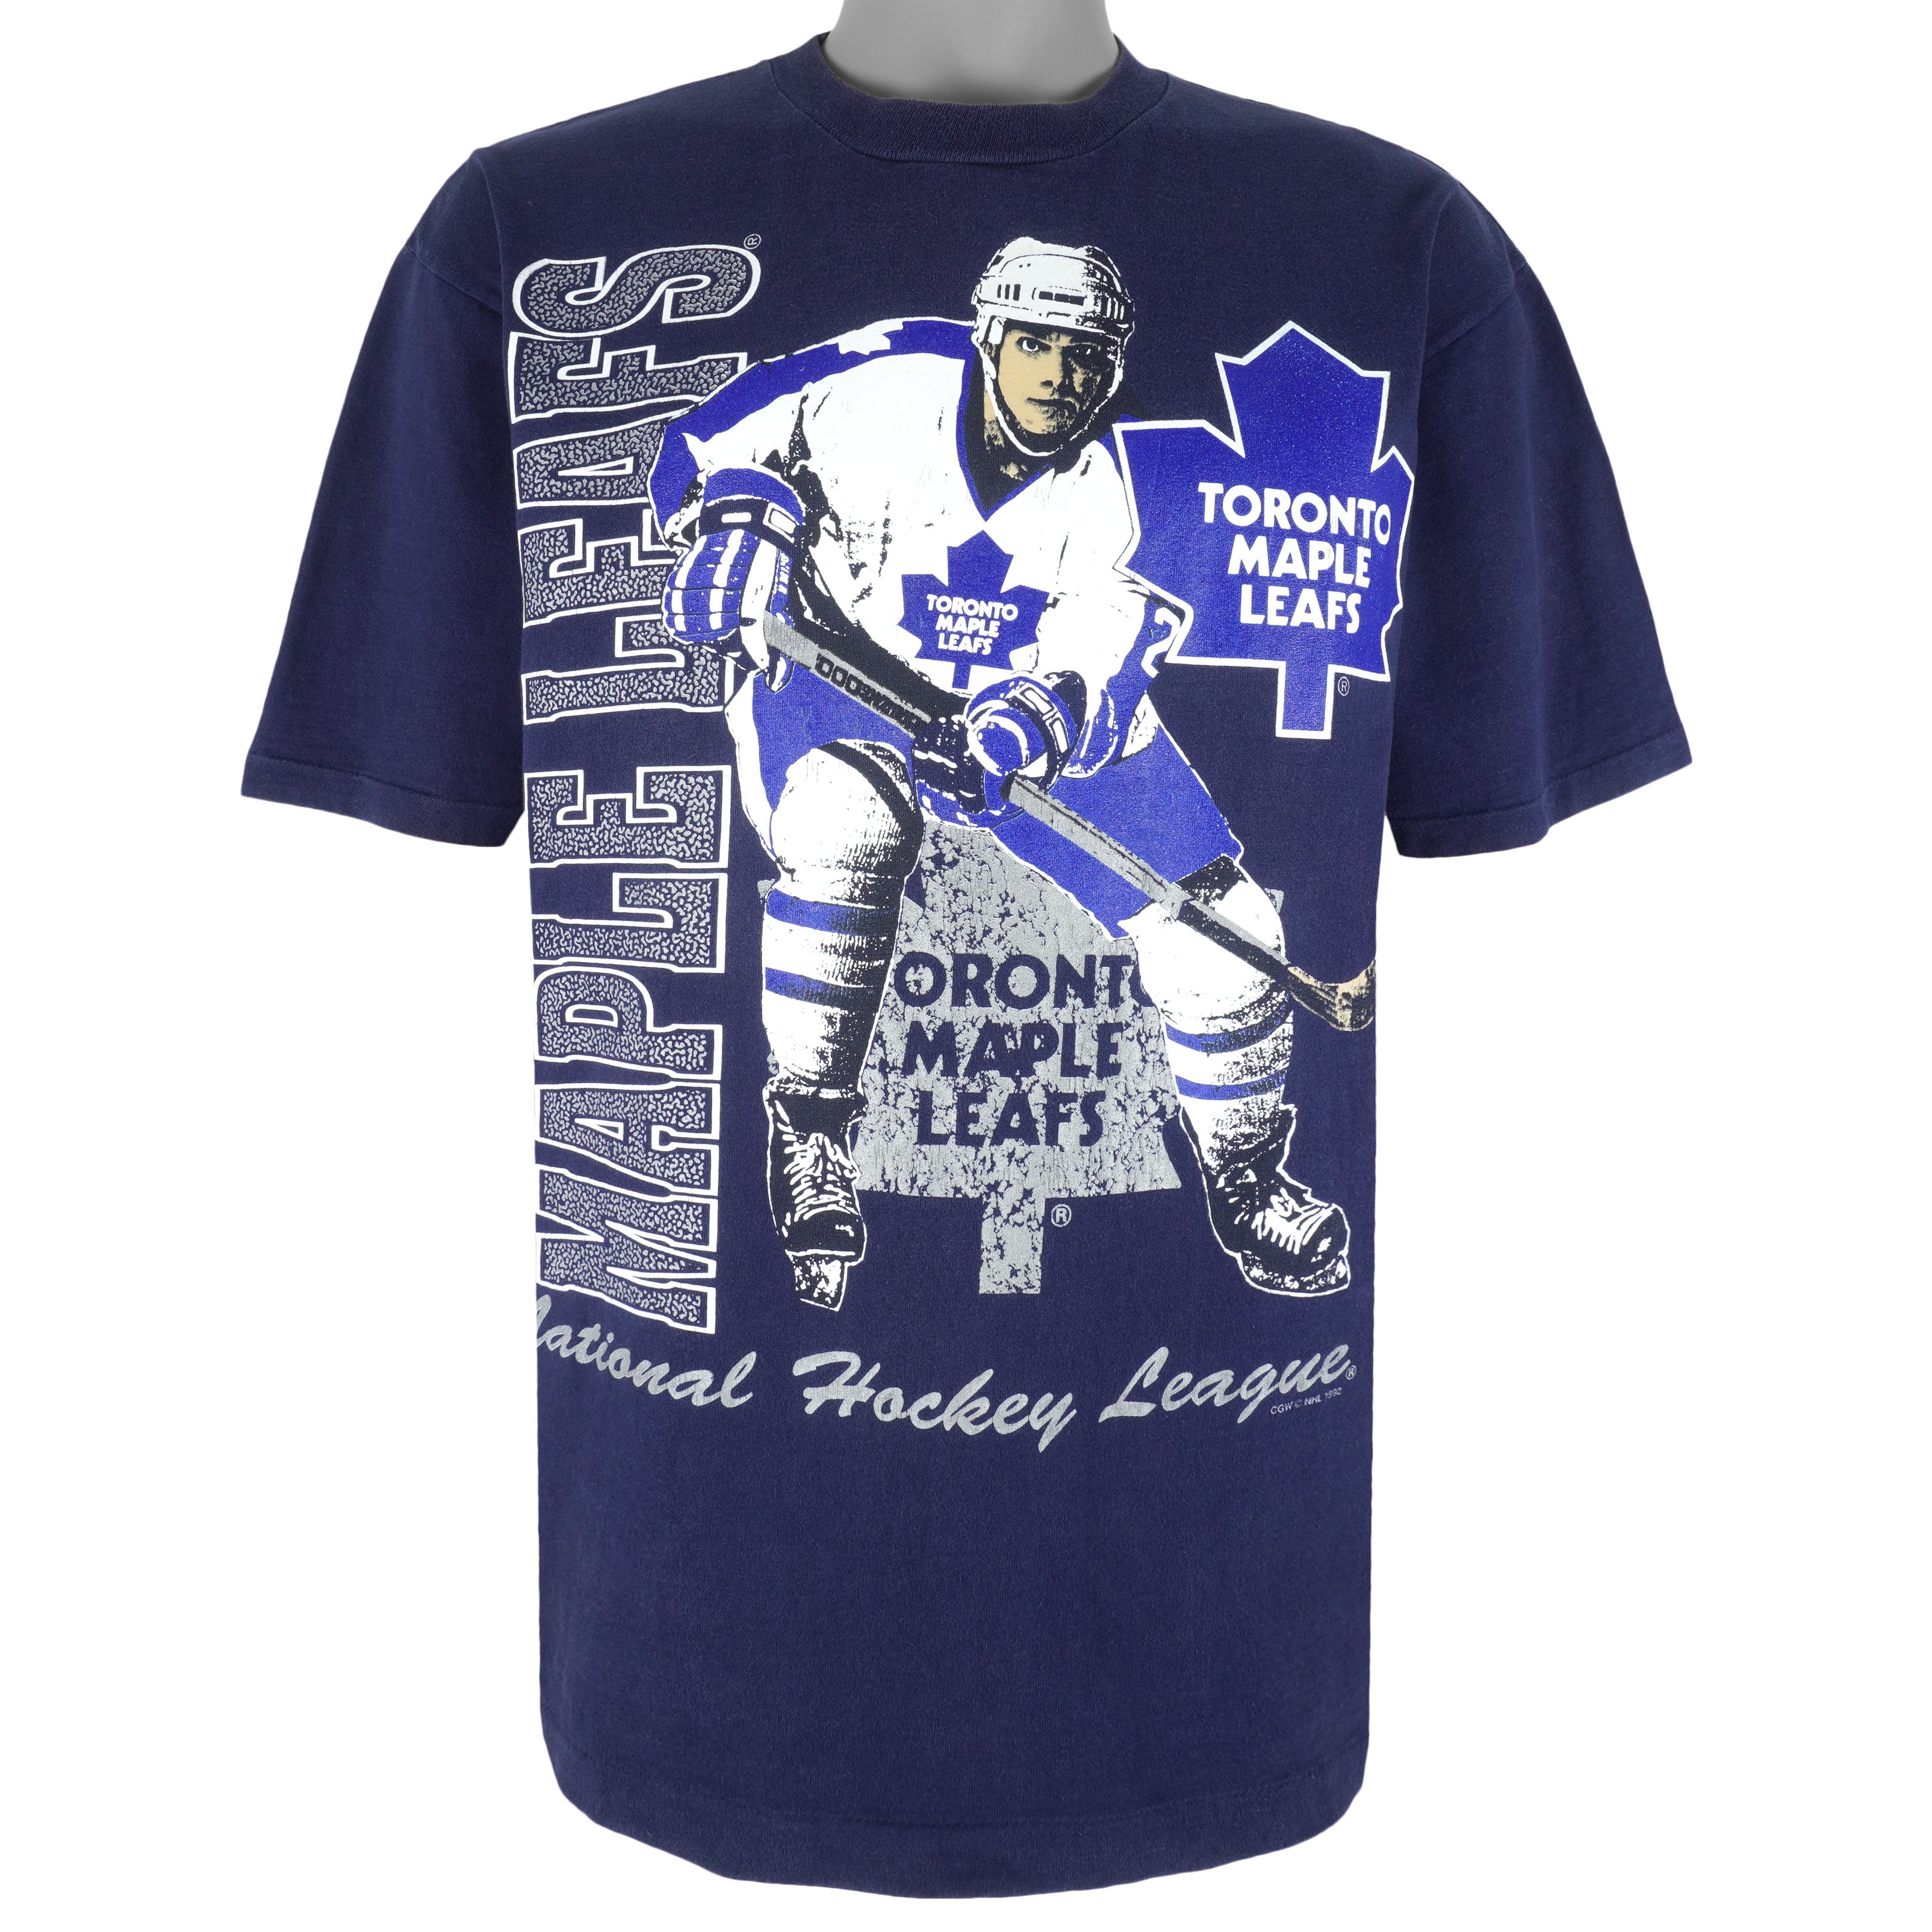 Toronto Maple Leafs Jerseys & Teamwear, NHL Merch